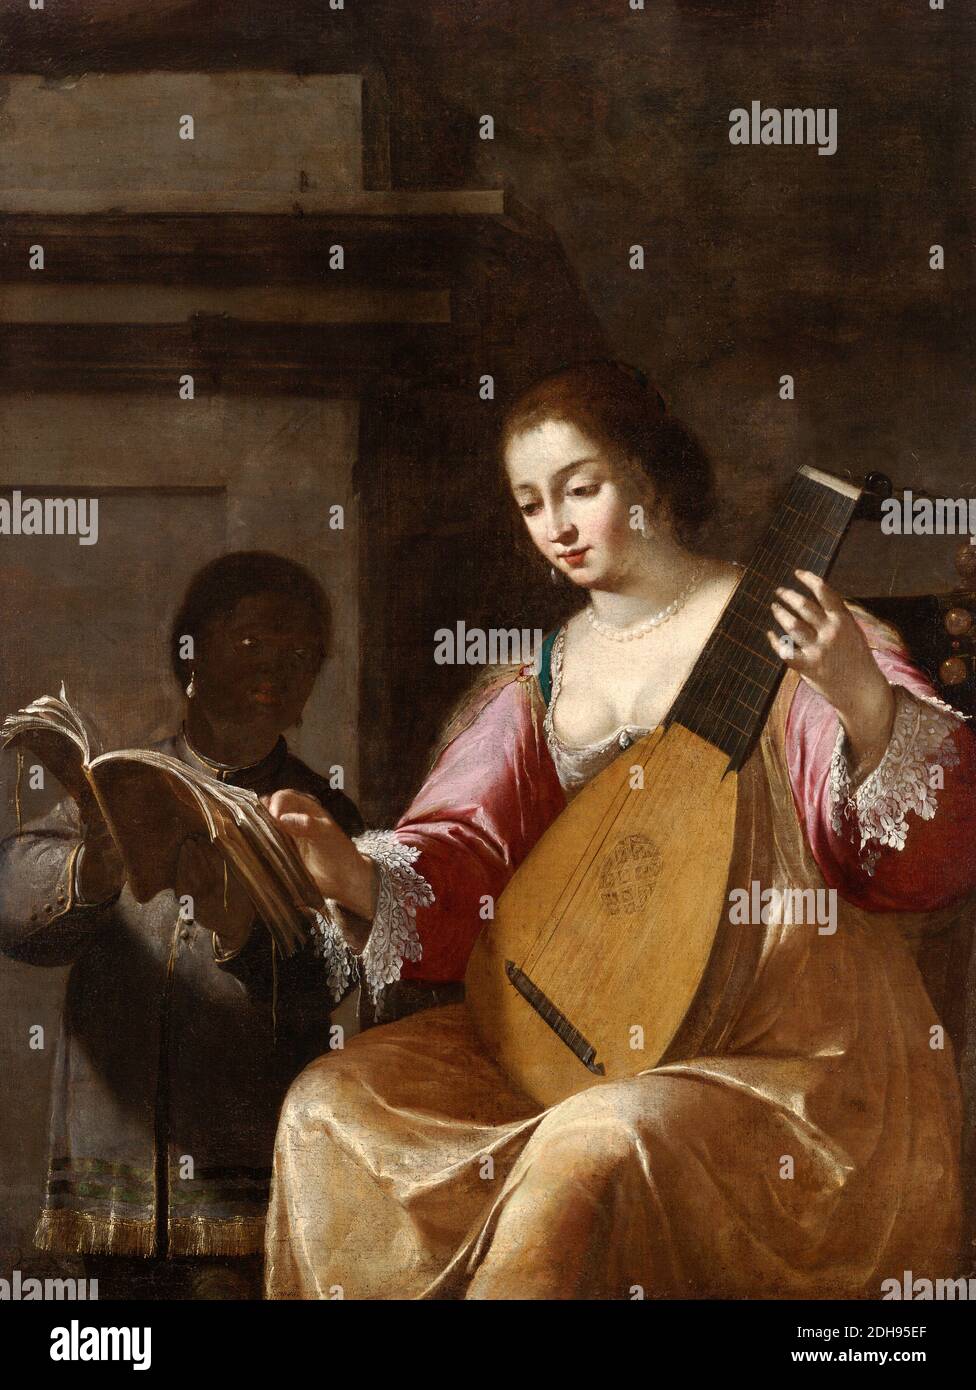 Femme jouant un luth, portrait peint par Jean Daret, 1638 Banque D'Images